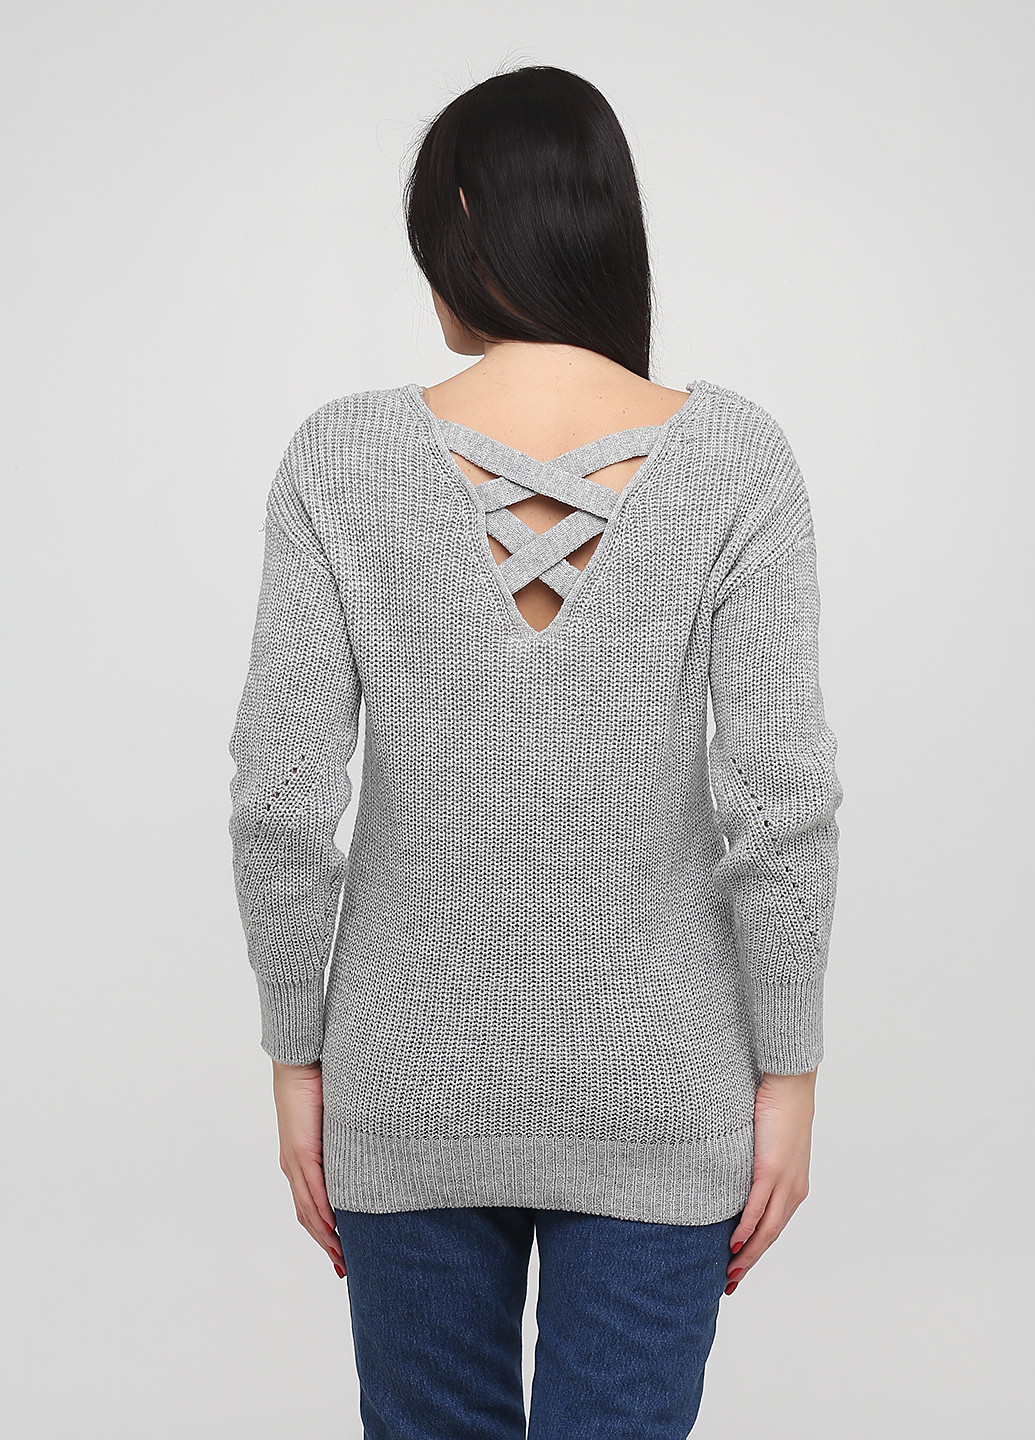 Серый демисезонный пуловер пуловер Francesca's